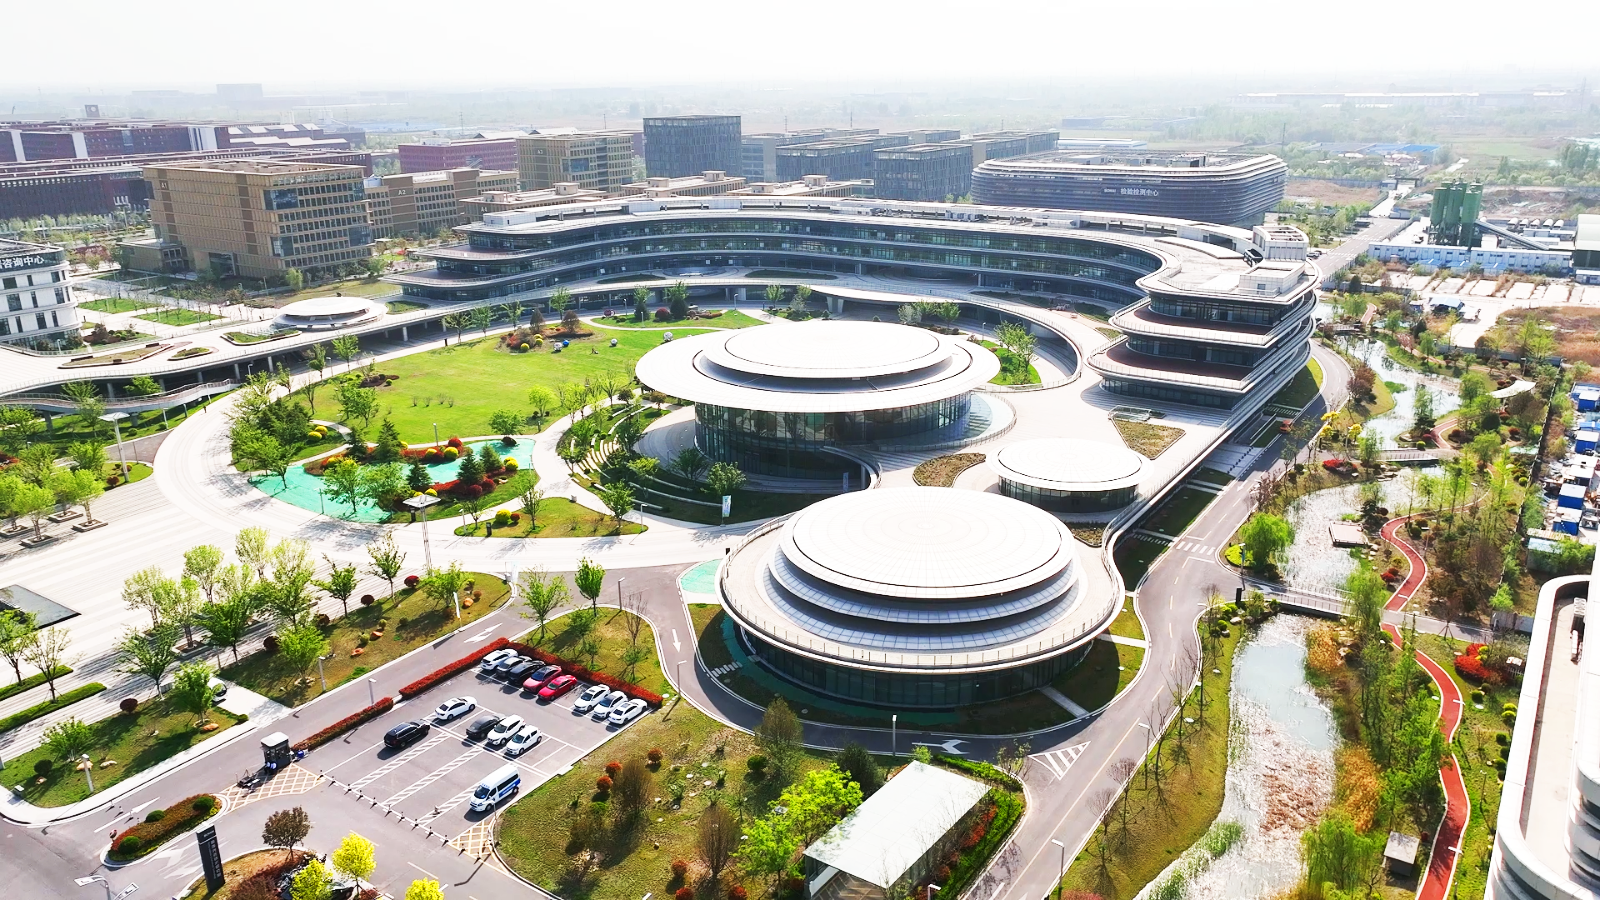 滨州市渤海先进技术研究院努力打造创新创业创造新生态。.png